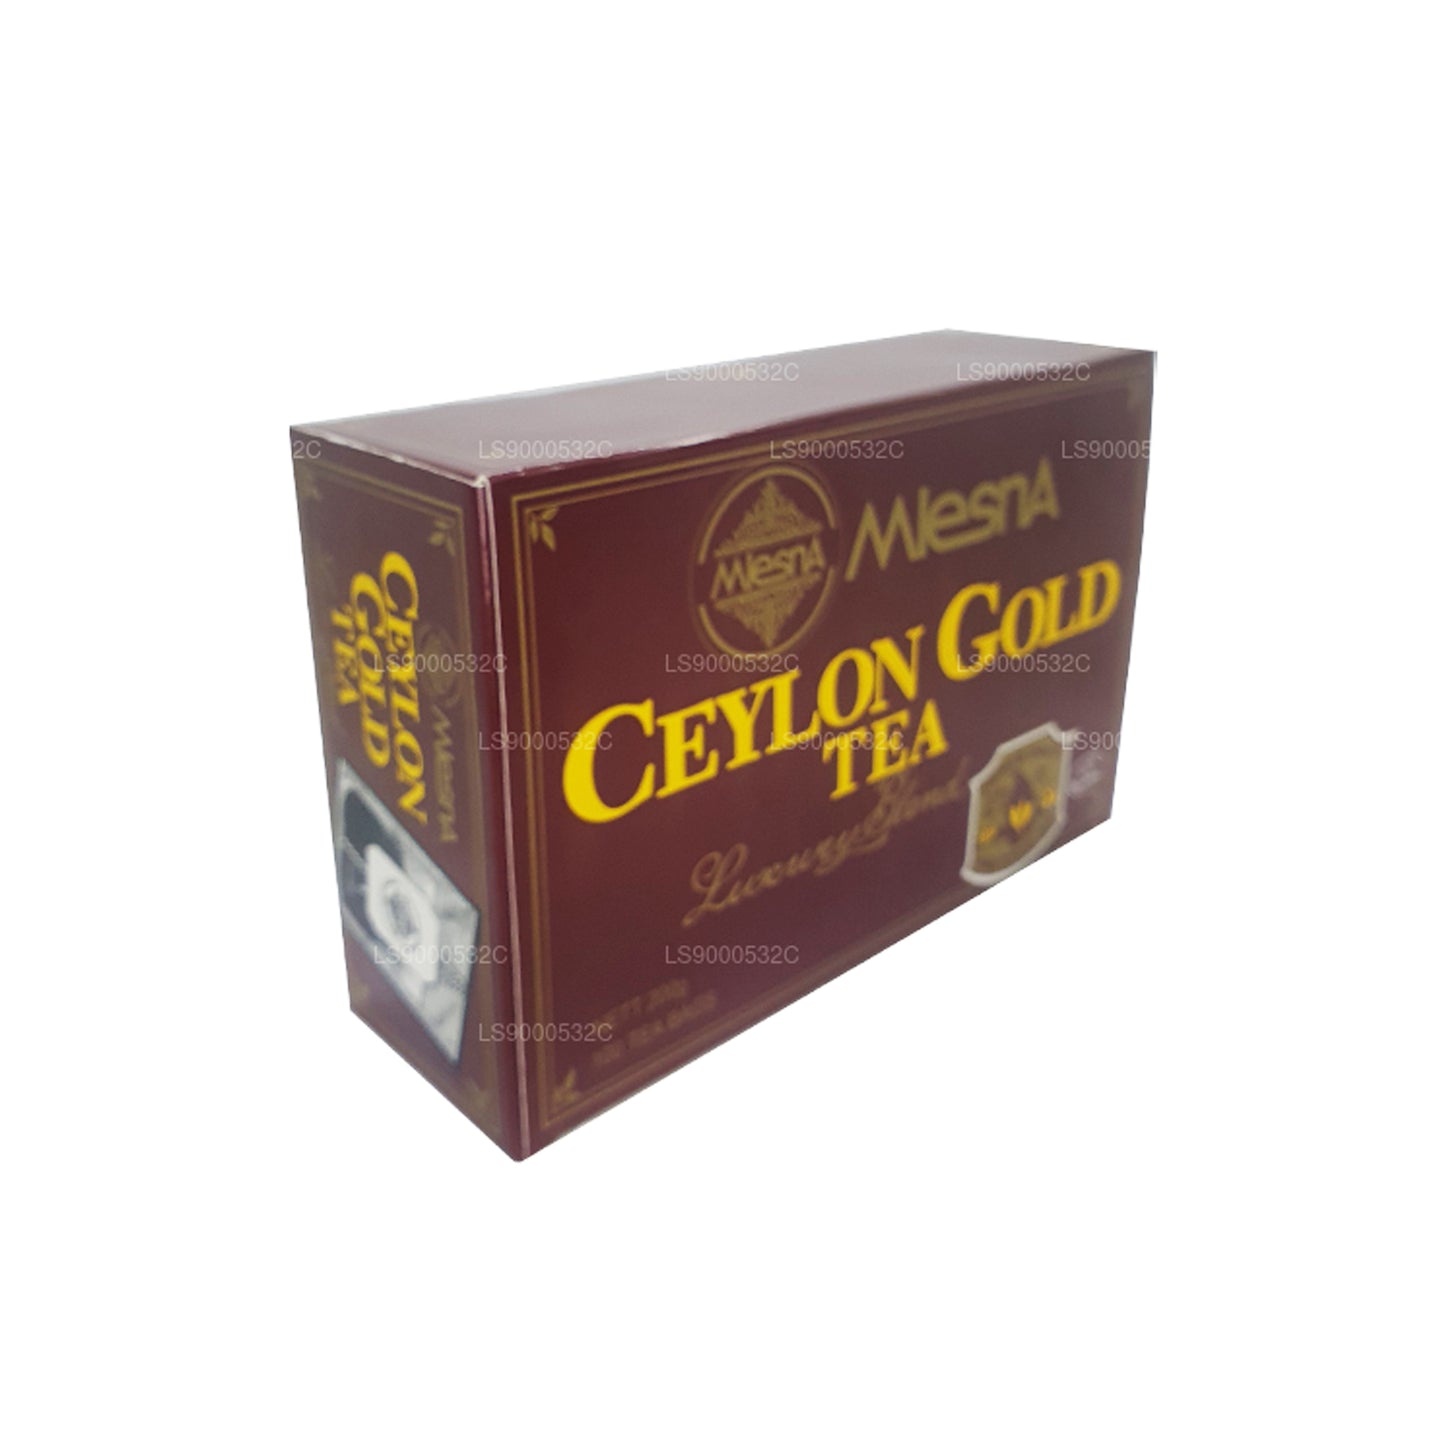 Mlesna Tea Ceylon Gold 100 teekotid (200g) String ja Tag